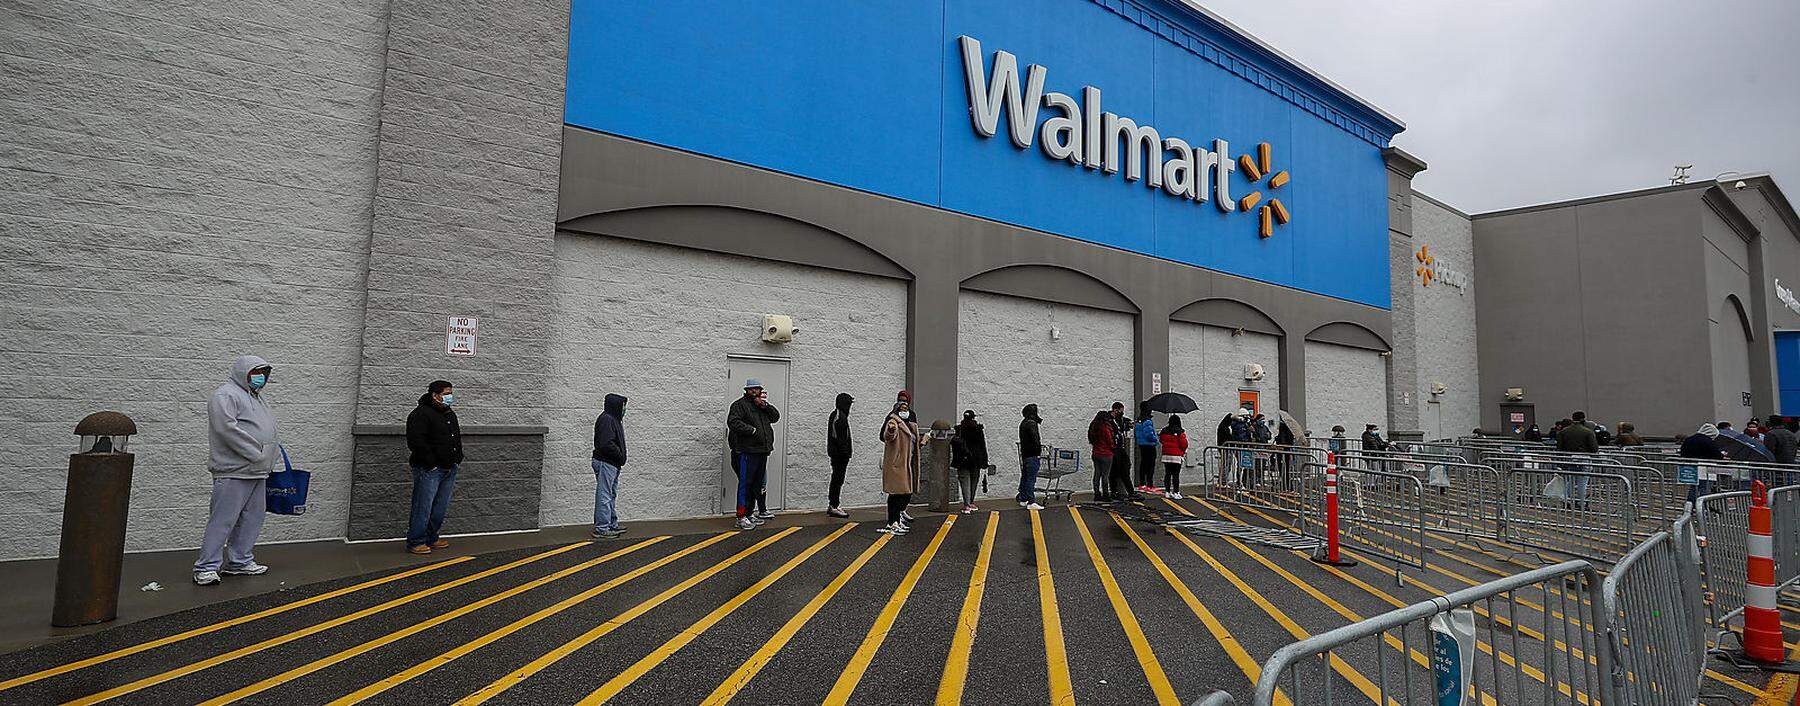 Walmart stellte in der Krise 235.000 neue Mitarbeiter ein, 2500 pro Tag. Der US-Einzelhändler ist der größte private Arbeitgeber der Welt.